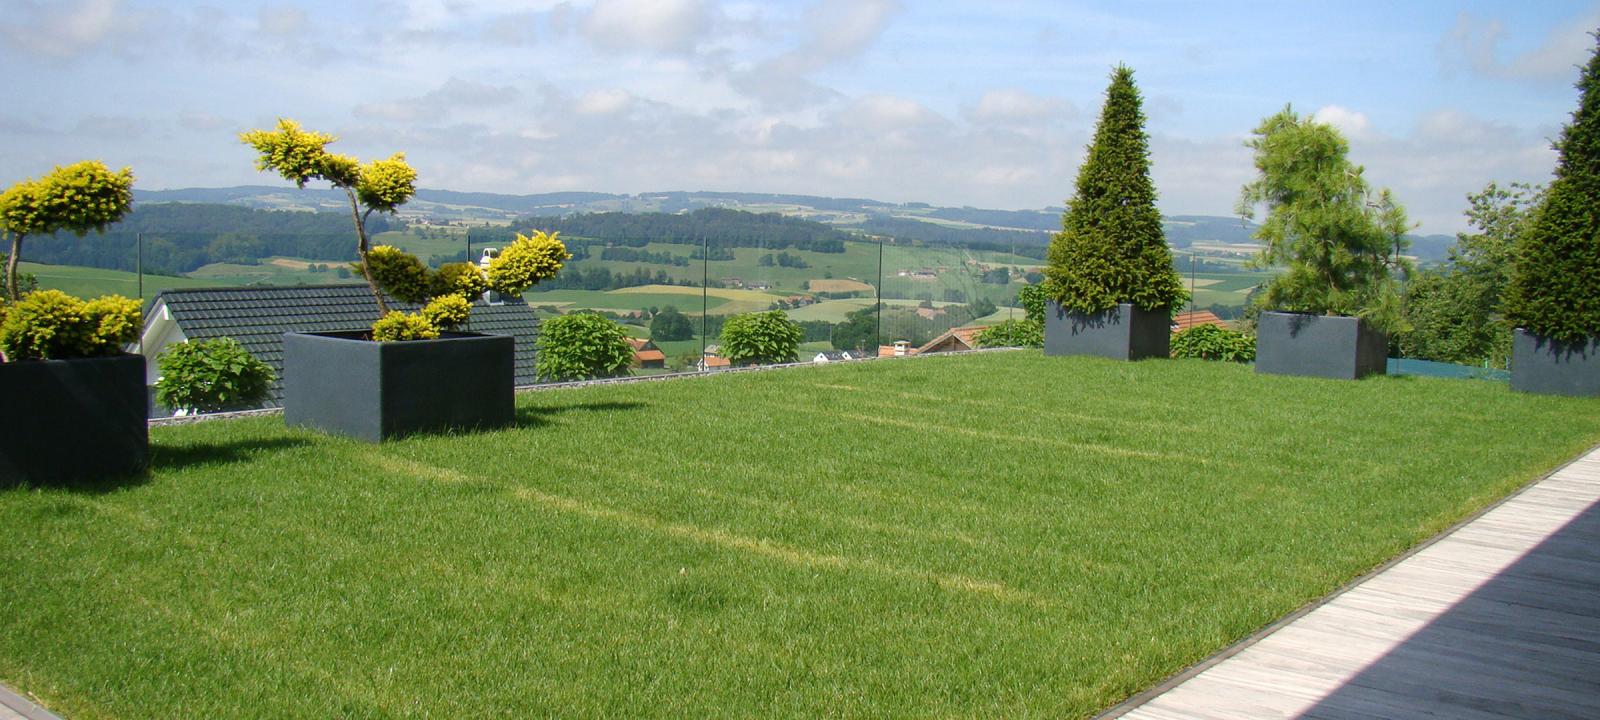 Dachgarten mit Rasen und Pflanzbehälter mit Ziergehölzen